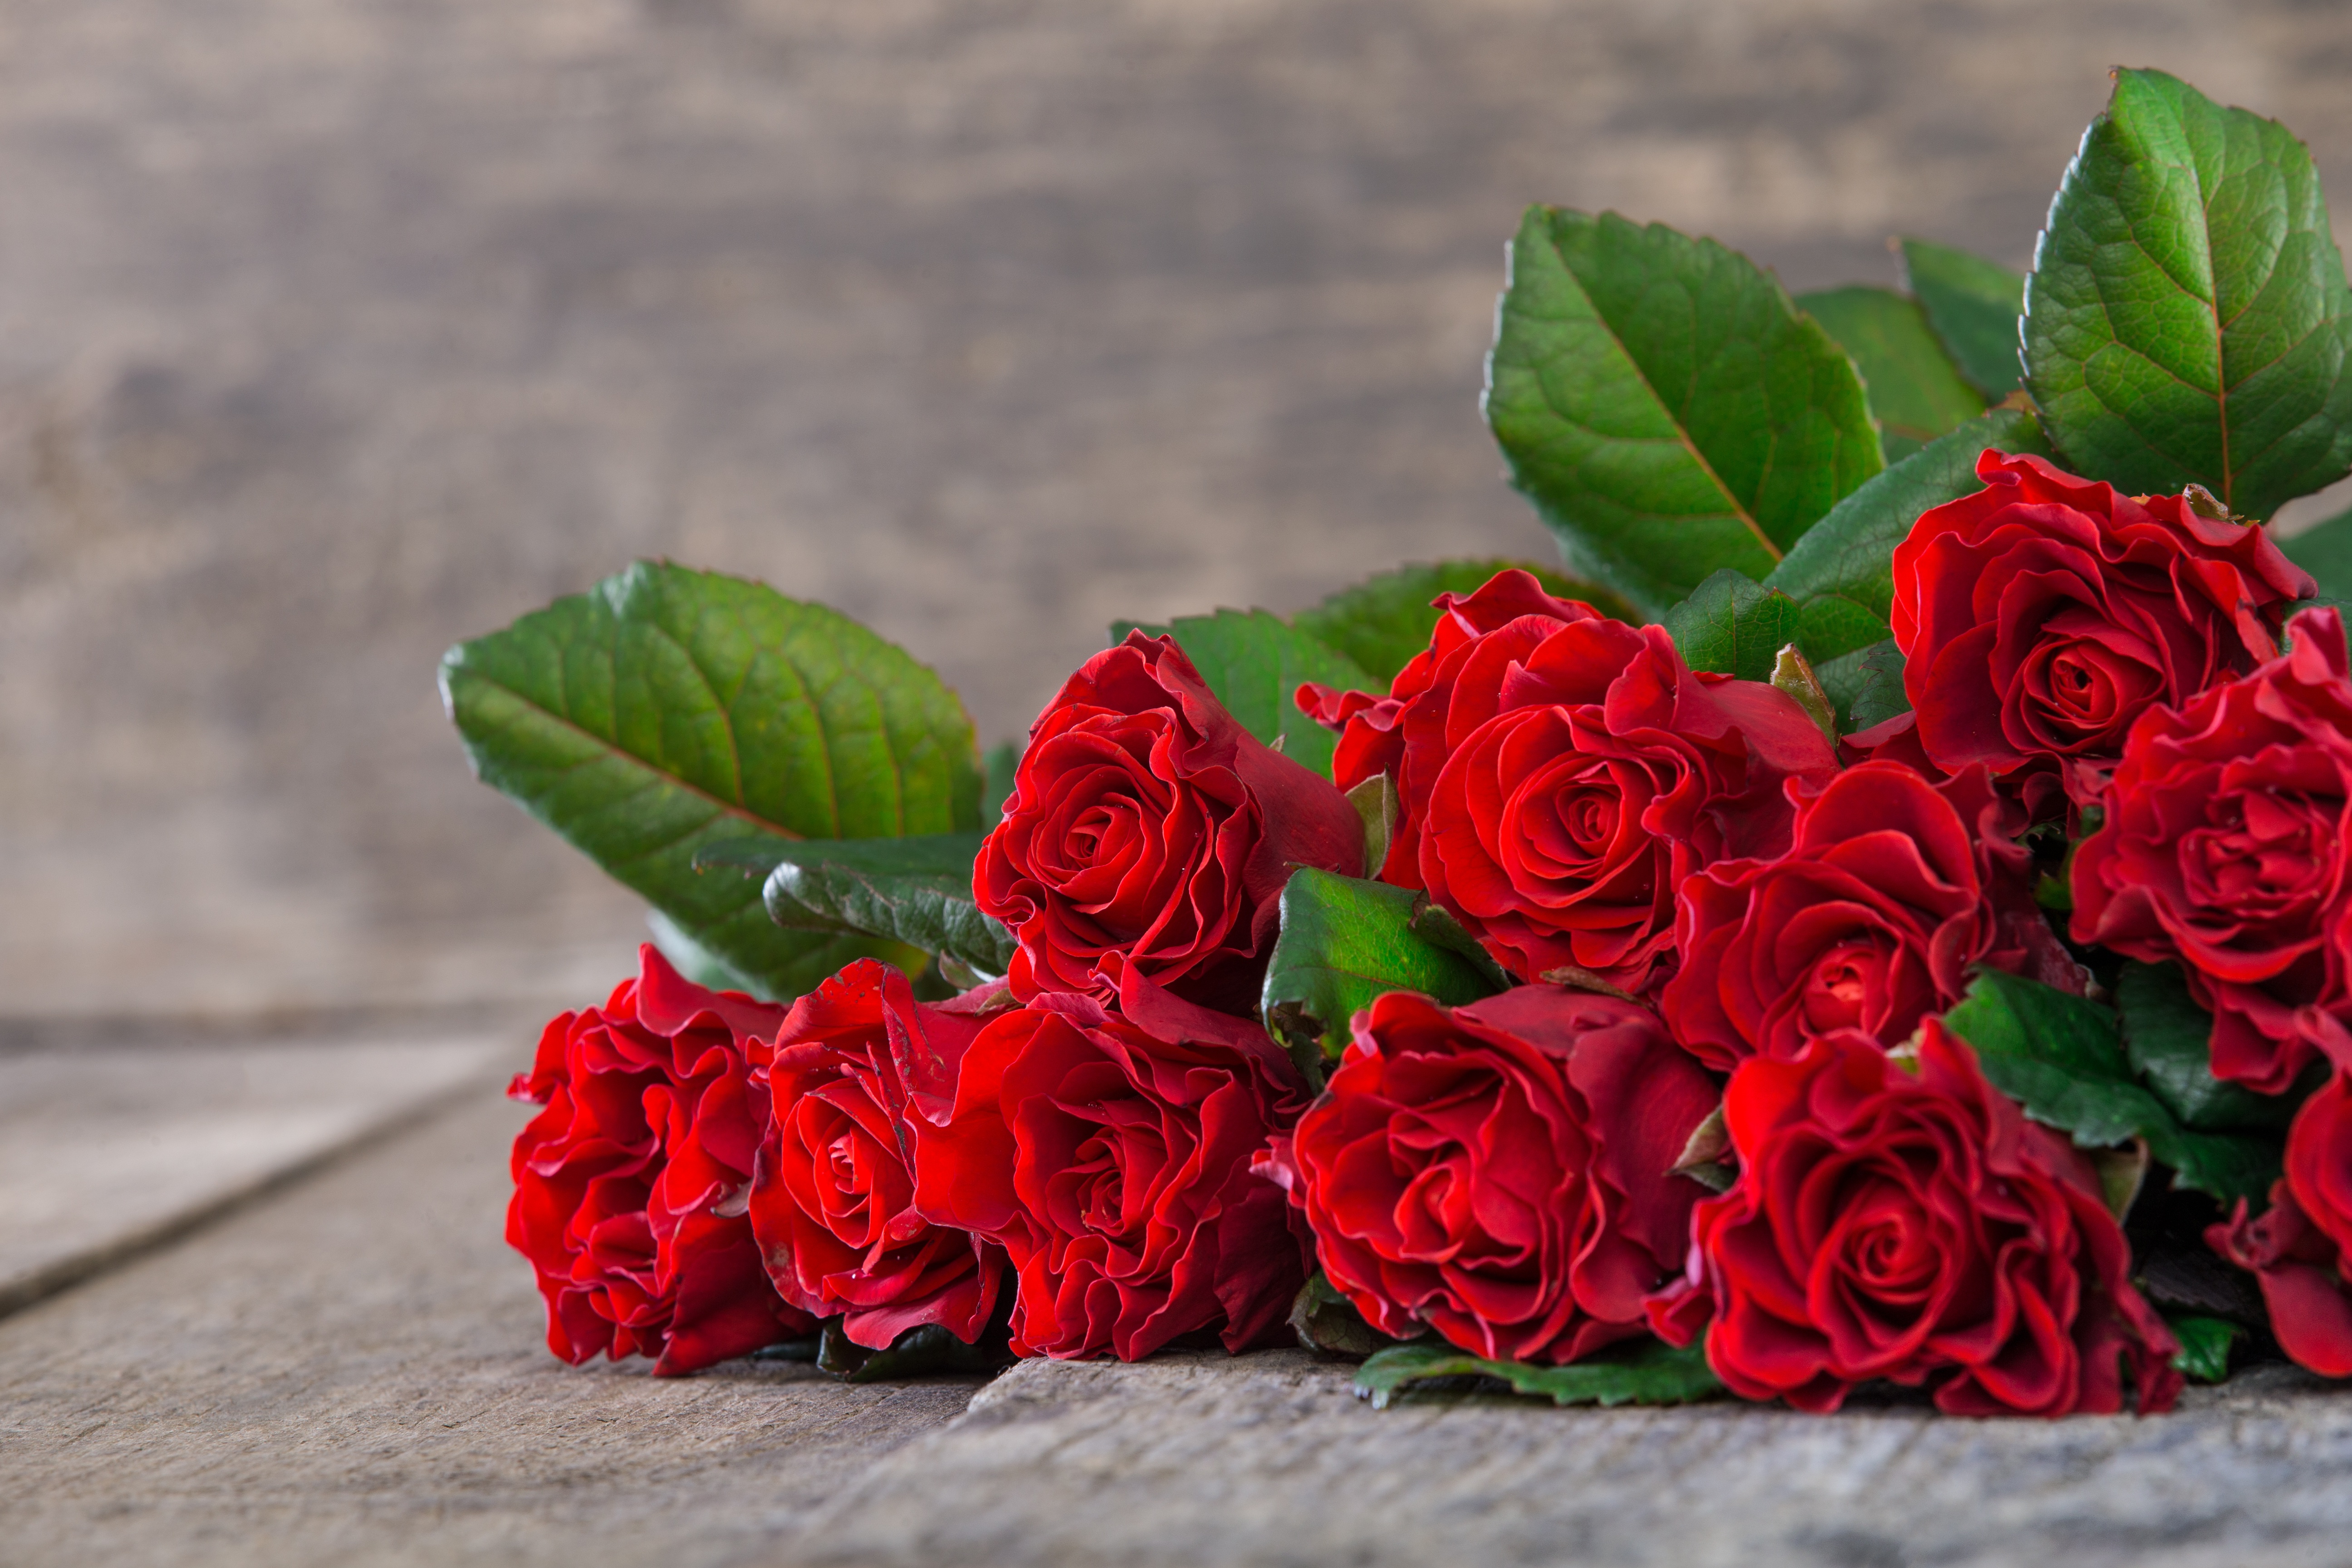 Bouquet Rose 5184x3456